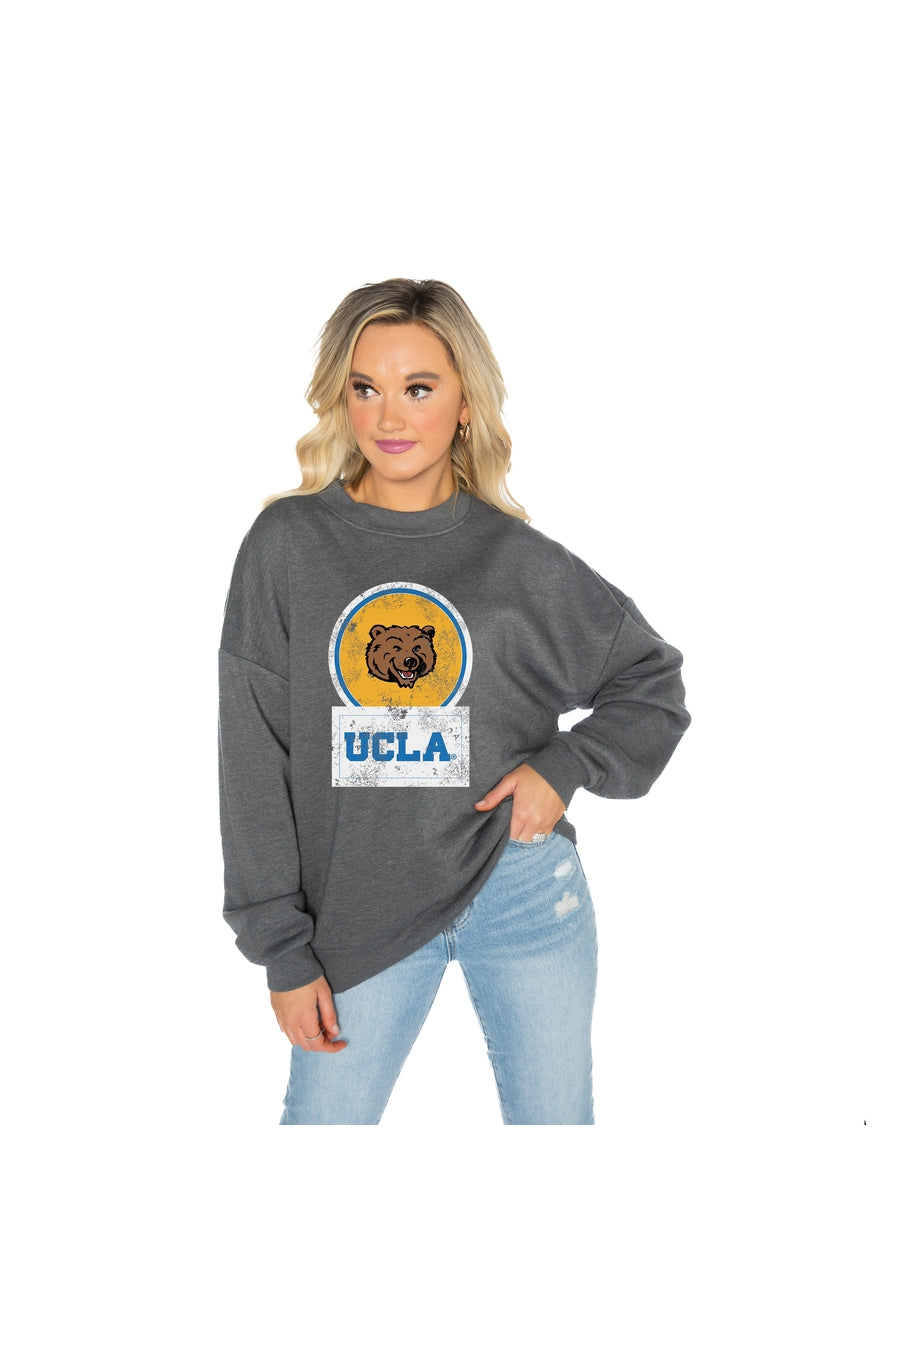 UCLA Block Over Bruins Crewneck Sweatshirt